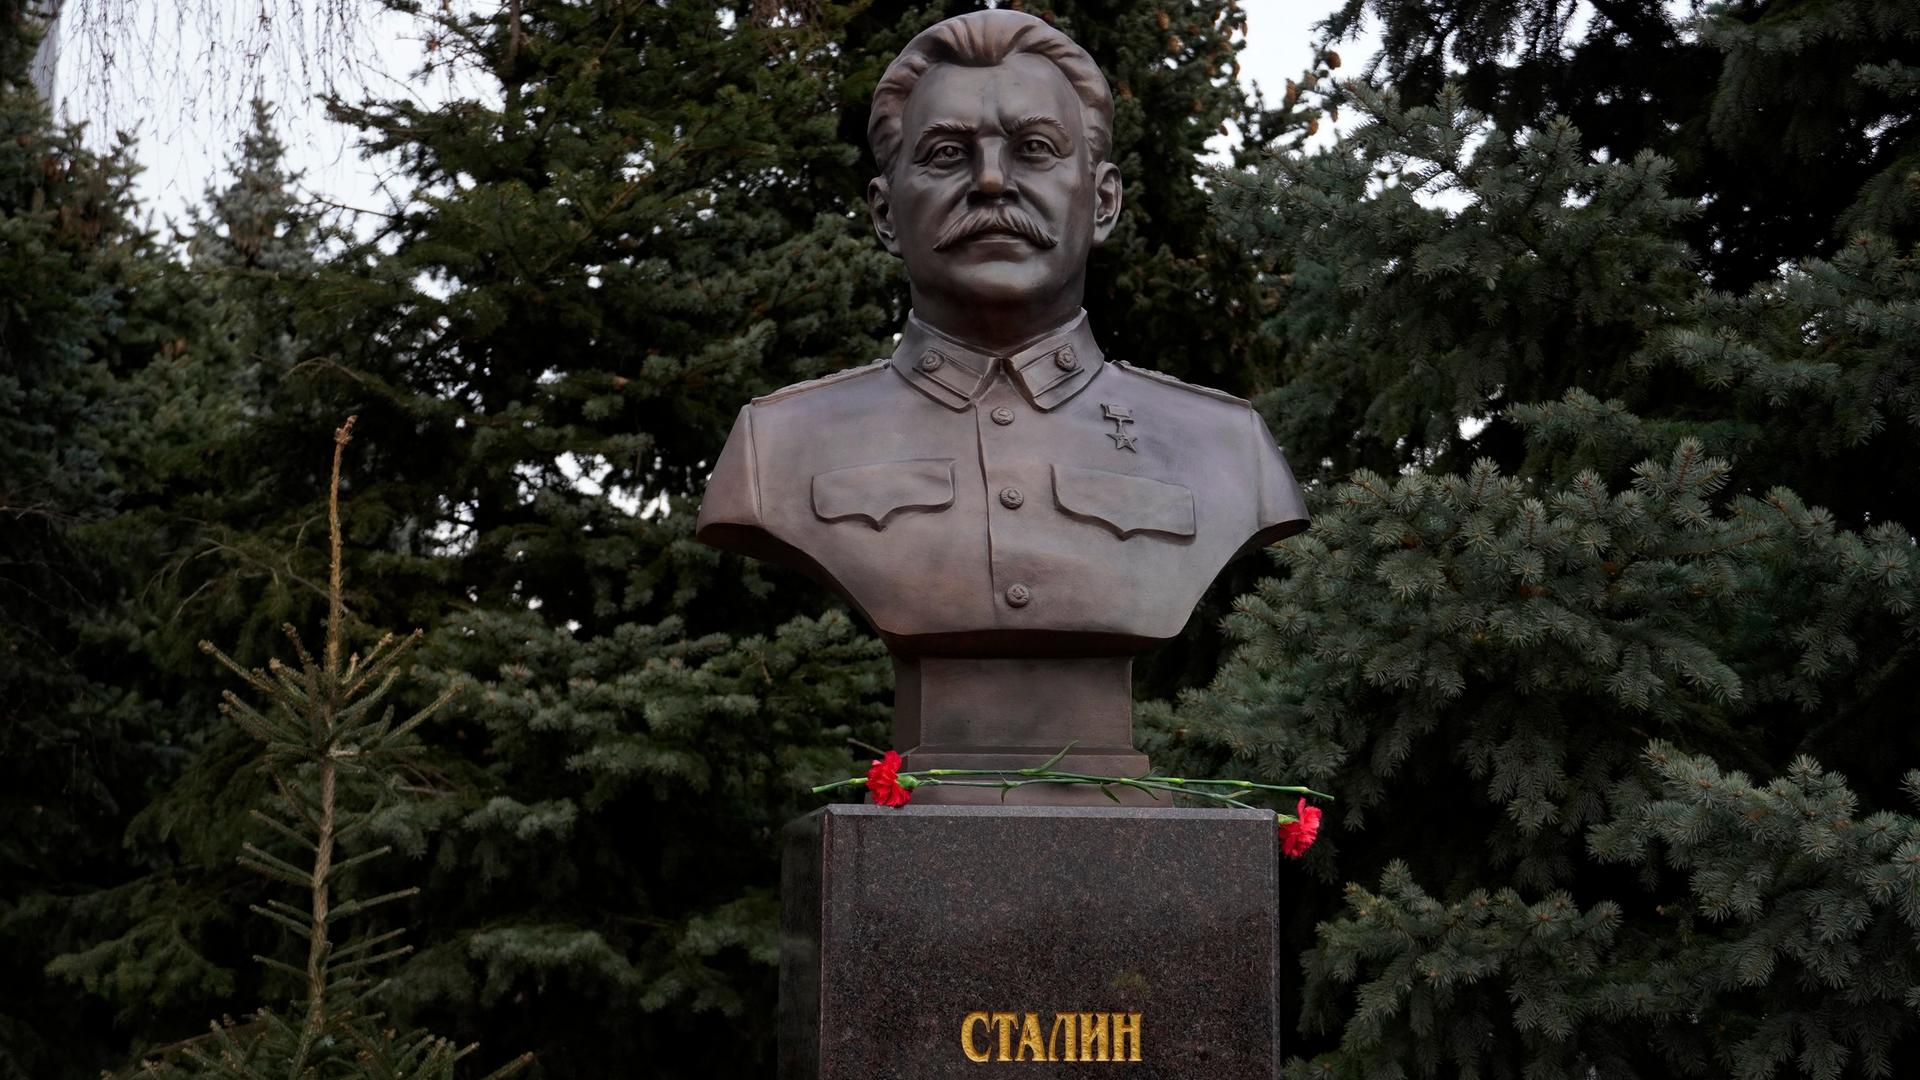 Die neue Büste zu Ehren des früheren sowjetischen Diktators Josef Stalin steht auf einem Sockel in einem Park in Wolgograd.